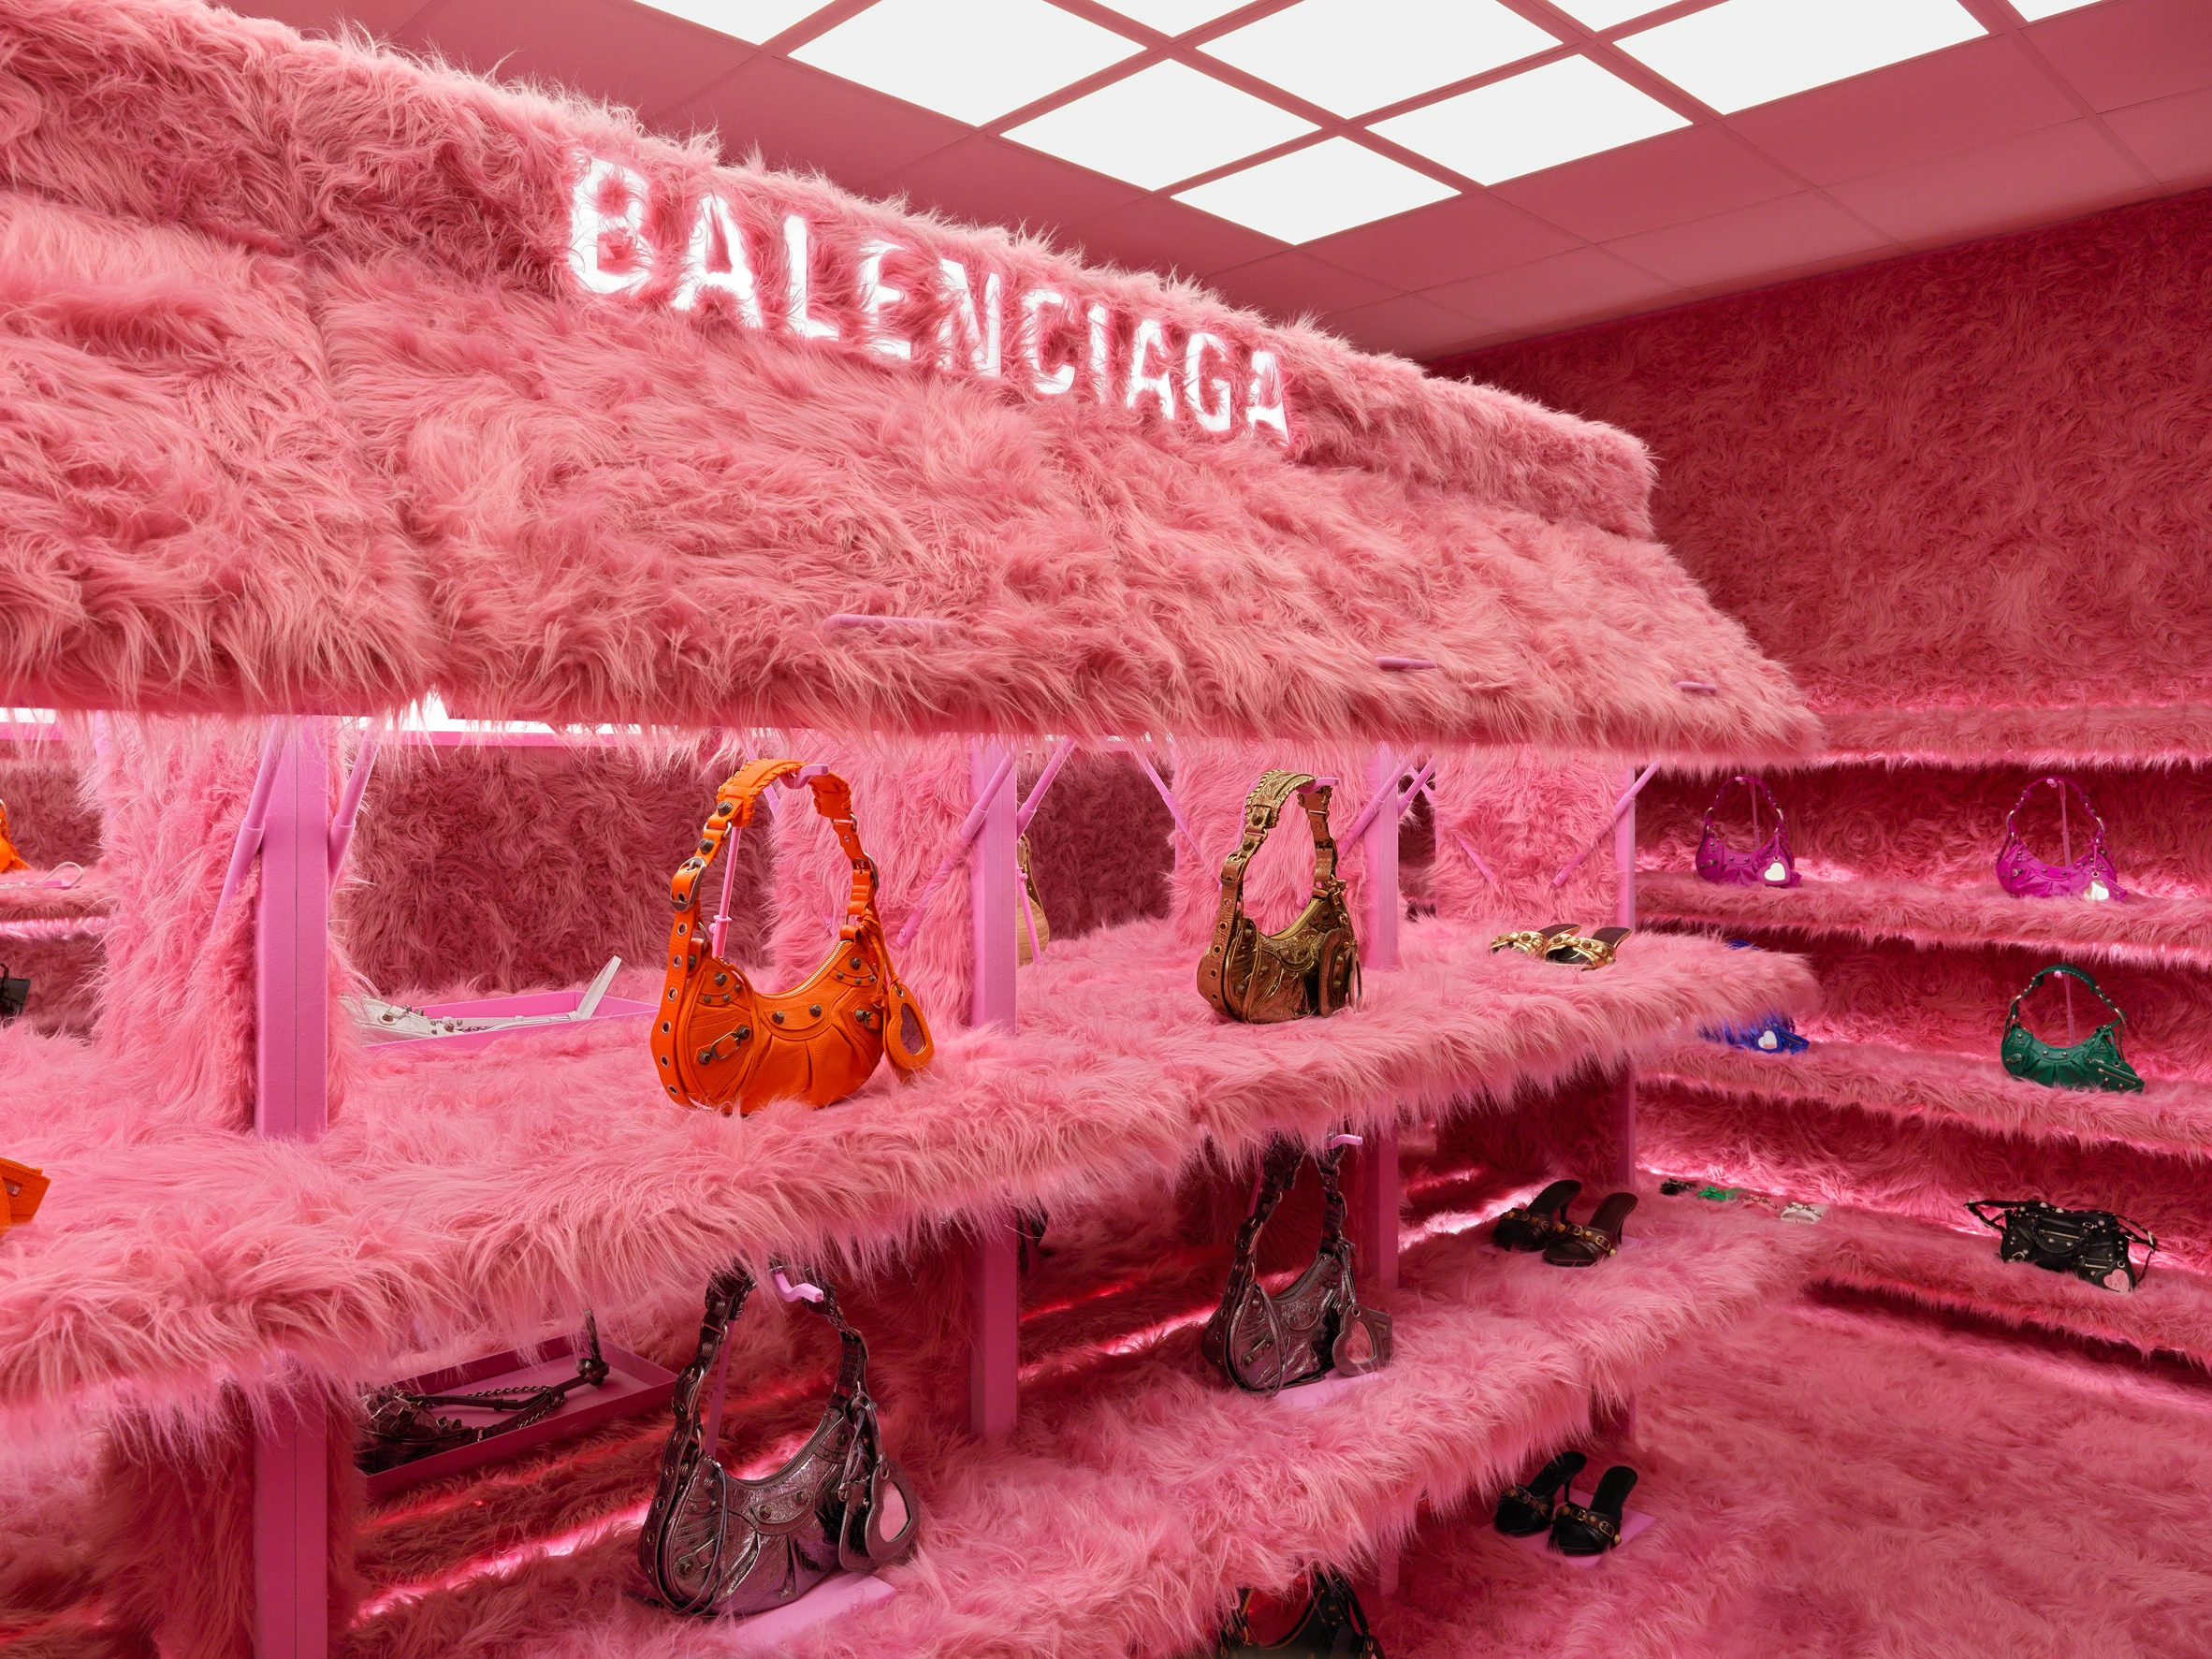 Loja Balenciaga Londres coberta com pelo cor-de-rosa